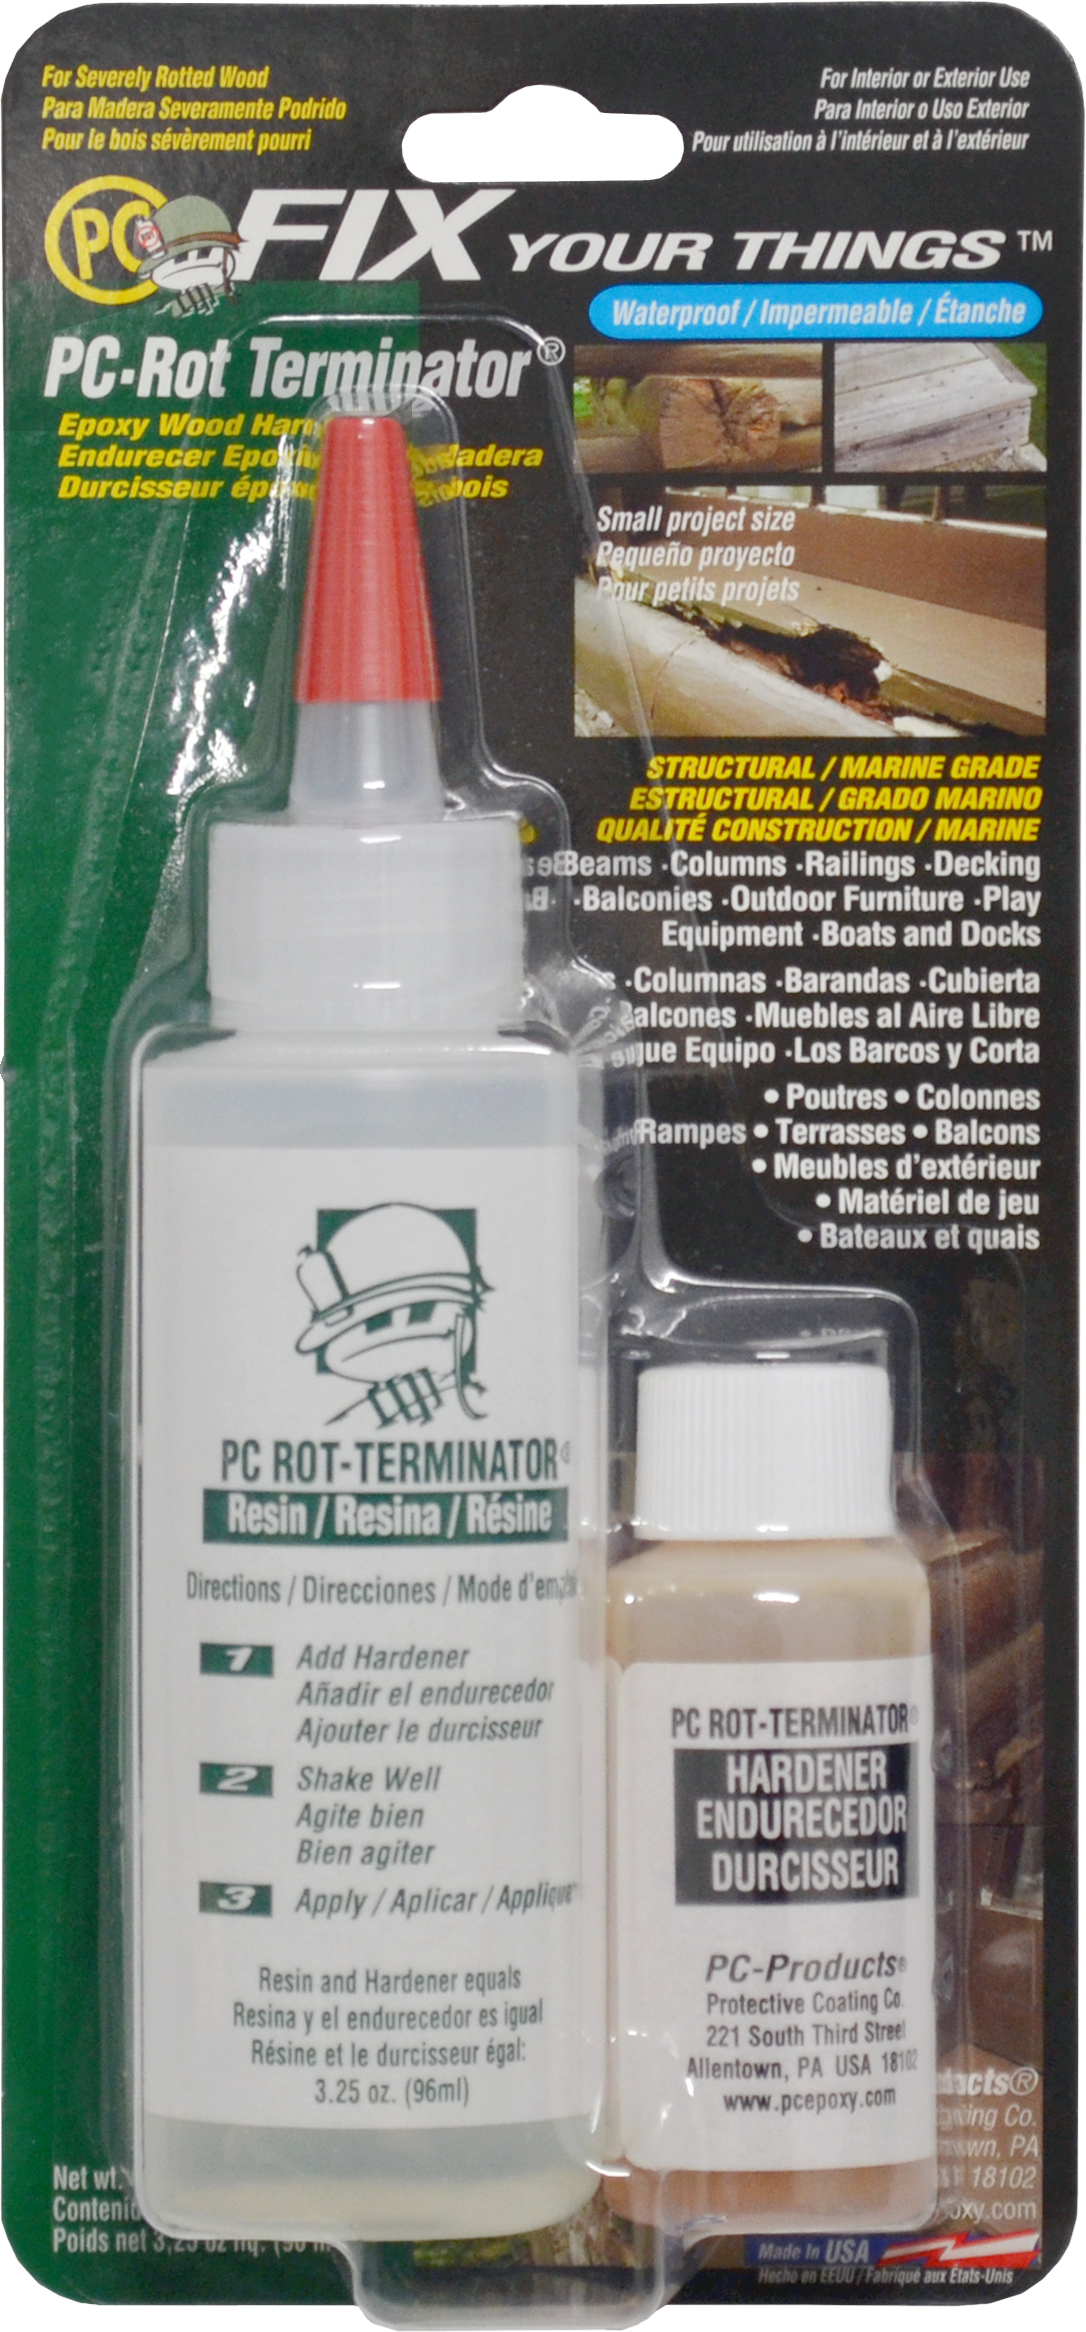 PC-Rot Terminator® – Protective Coating Company